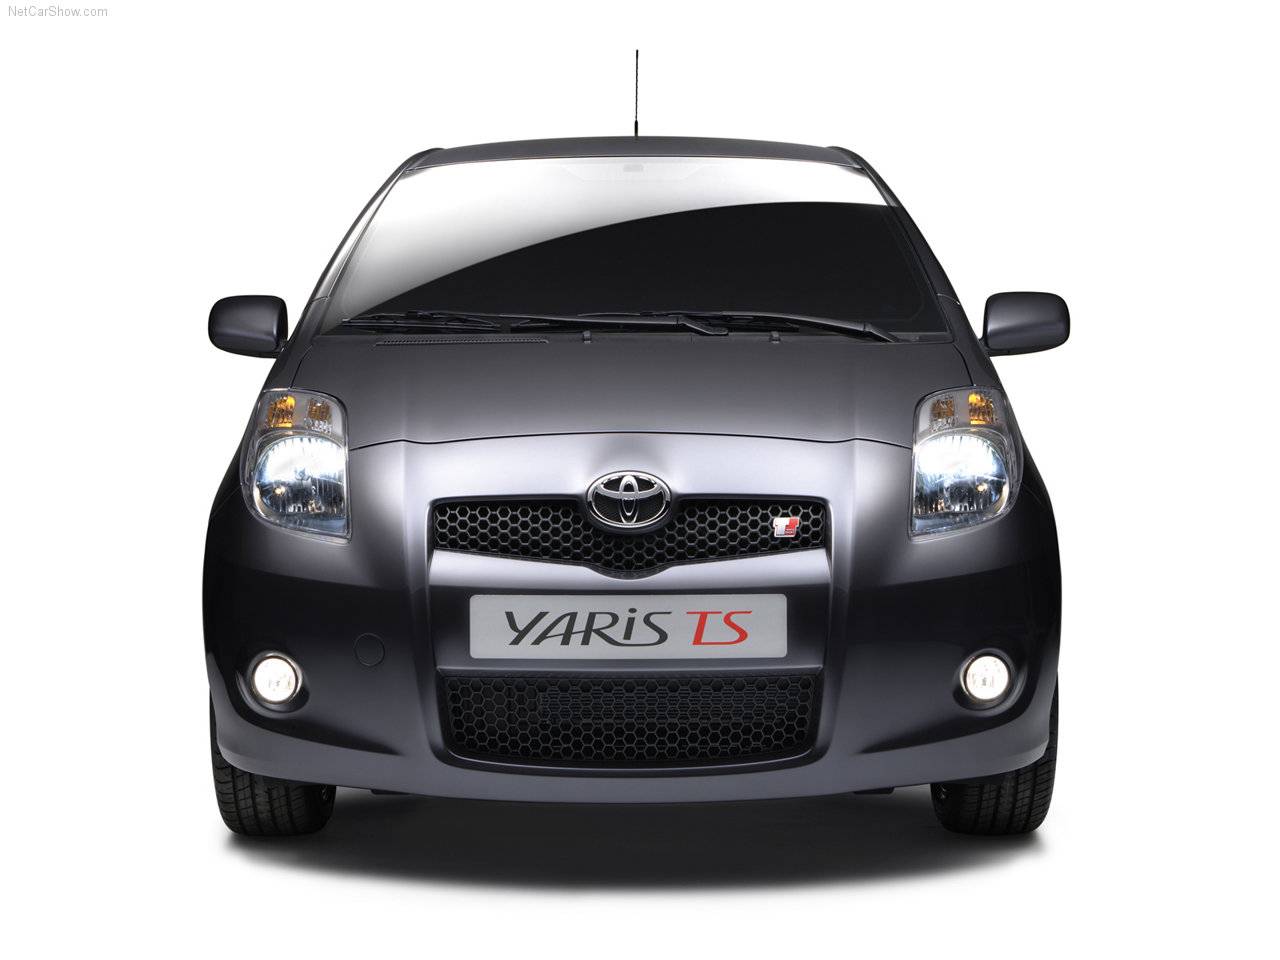 ... - Populaire français d'automobiles: 2006 Toyota Yaris TS Concept